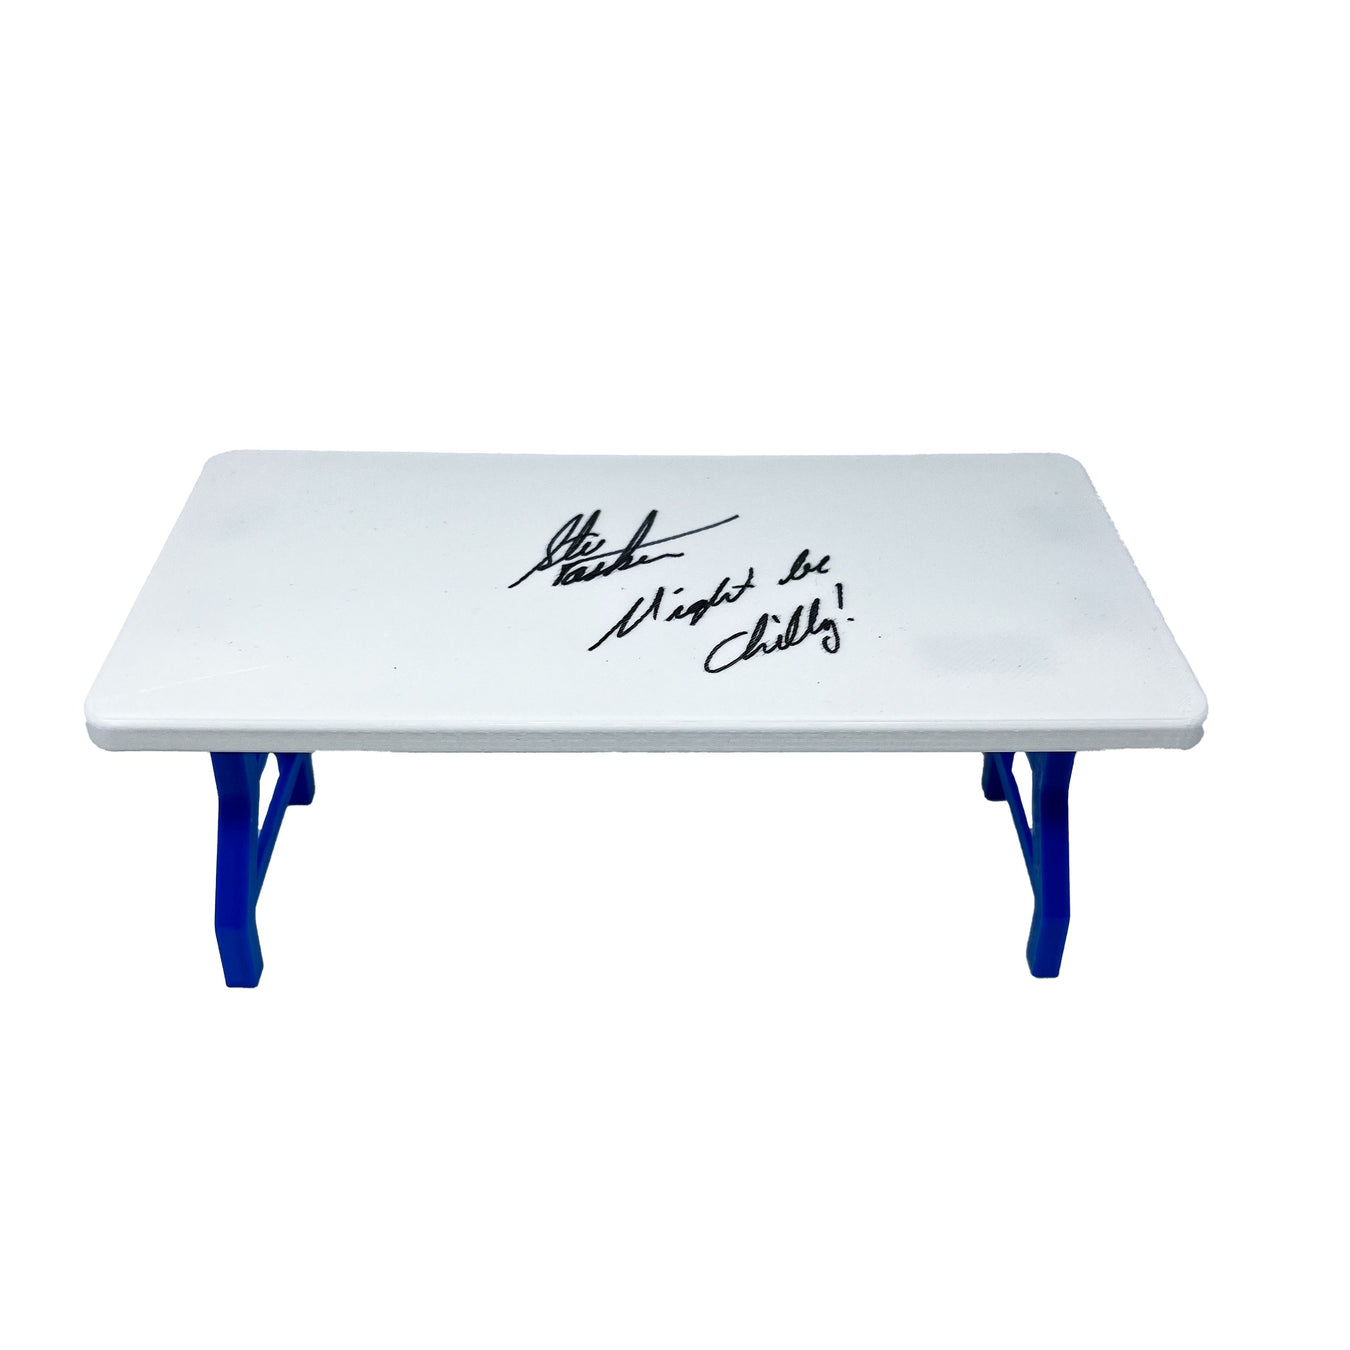 Signed Mini Table